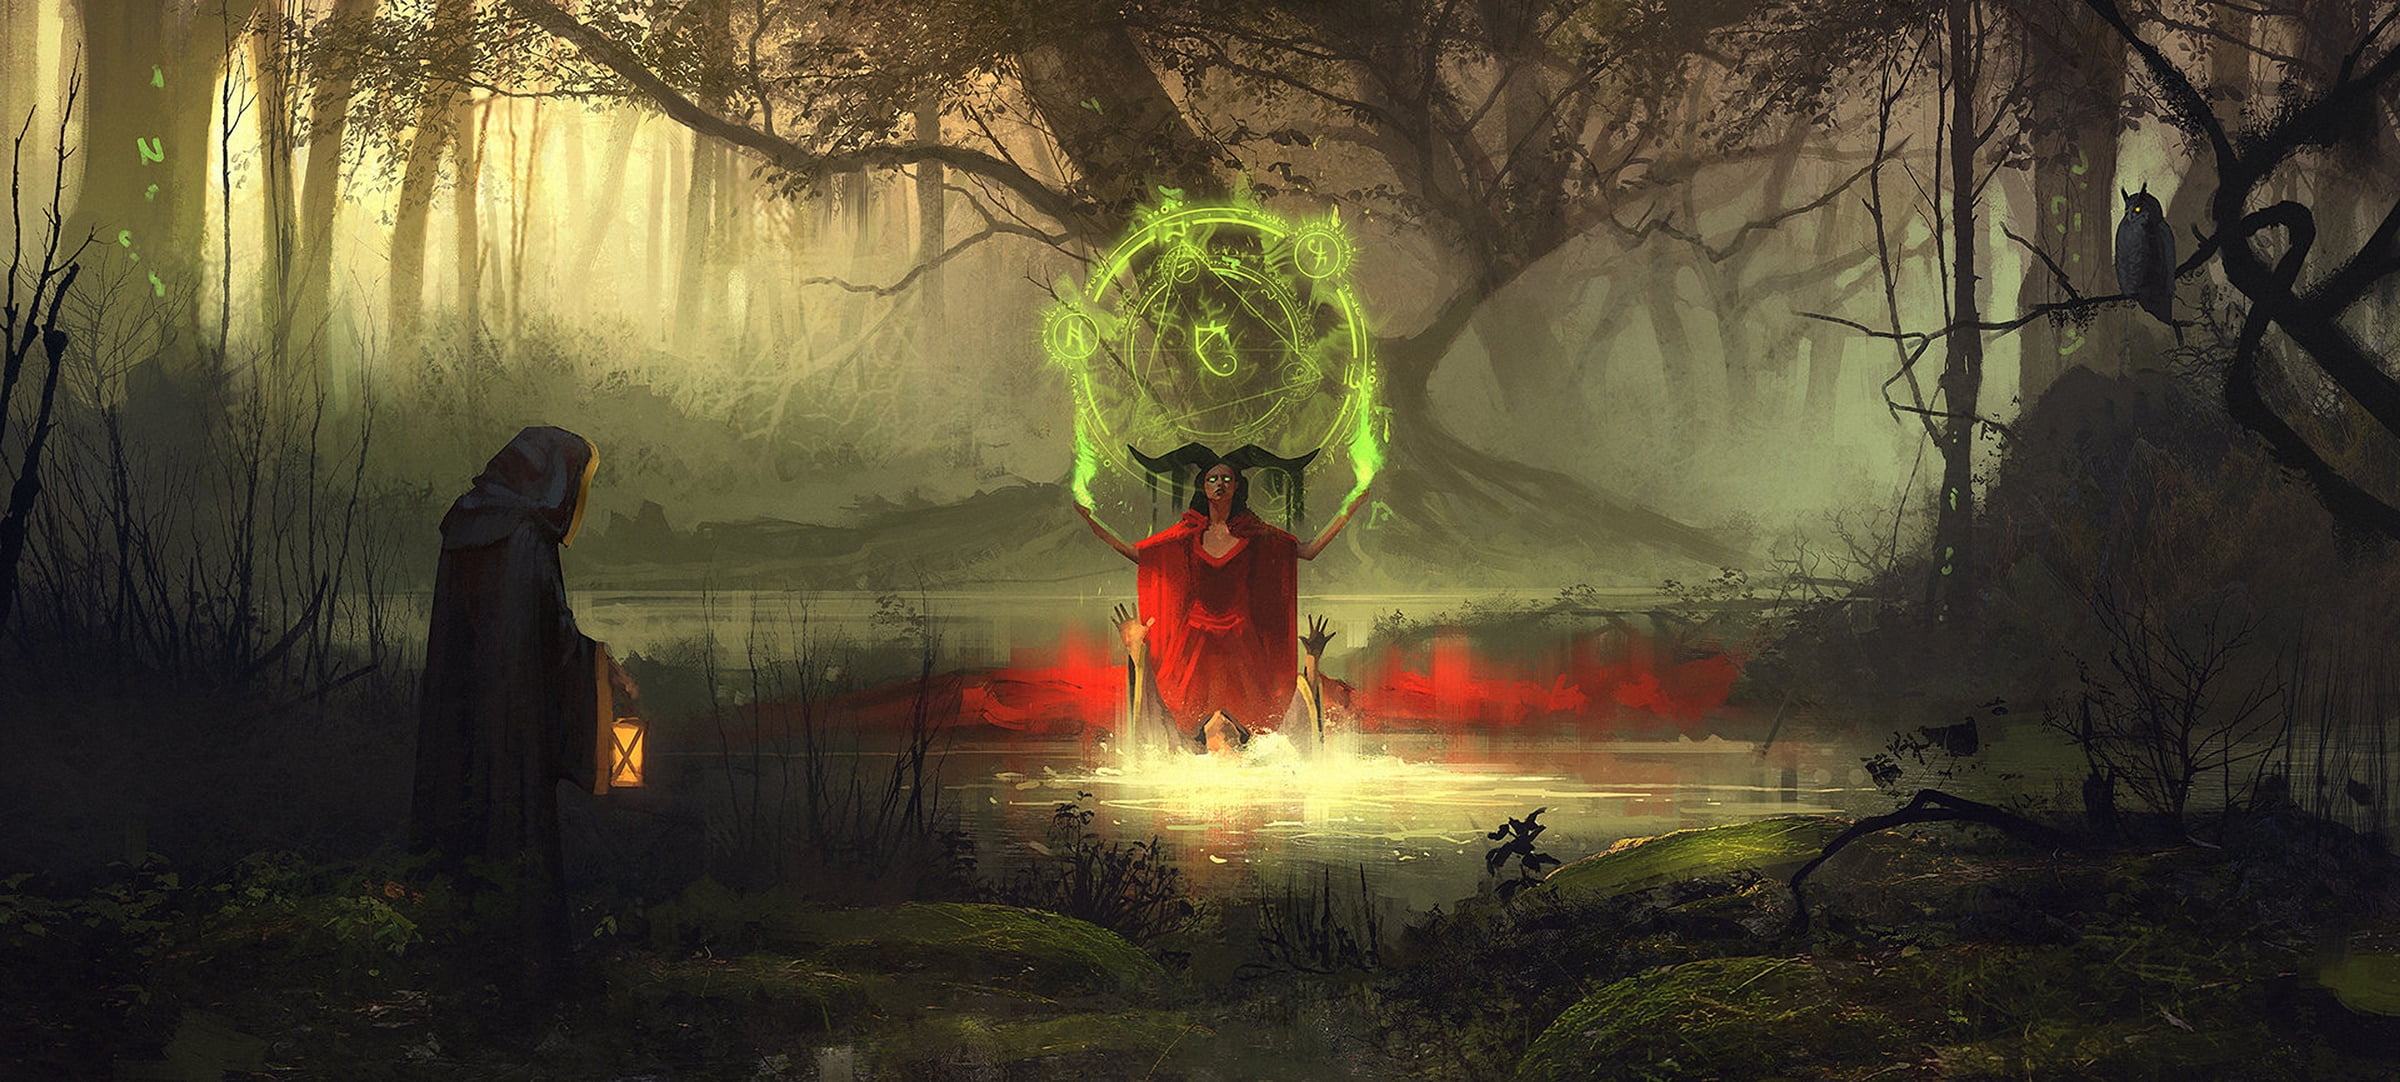 Devil doing green ritual soul illustration, artwork, digital art, Sergey Zabelin, fantasy art